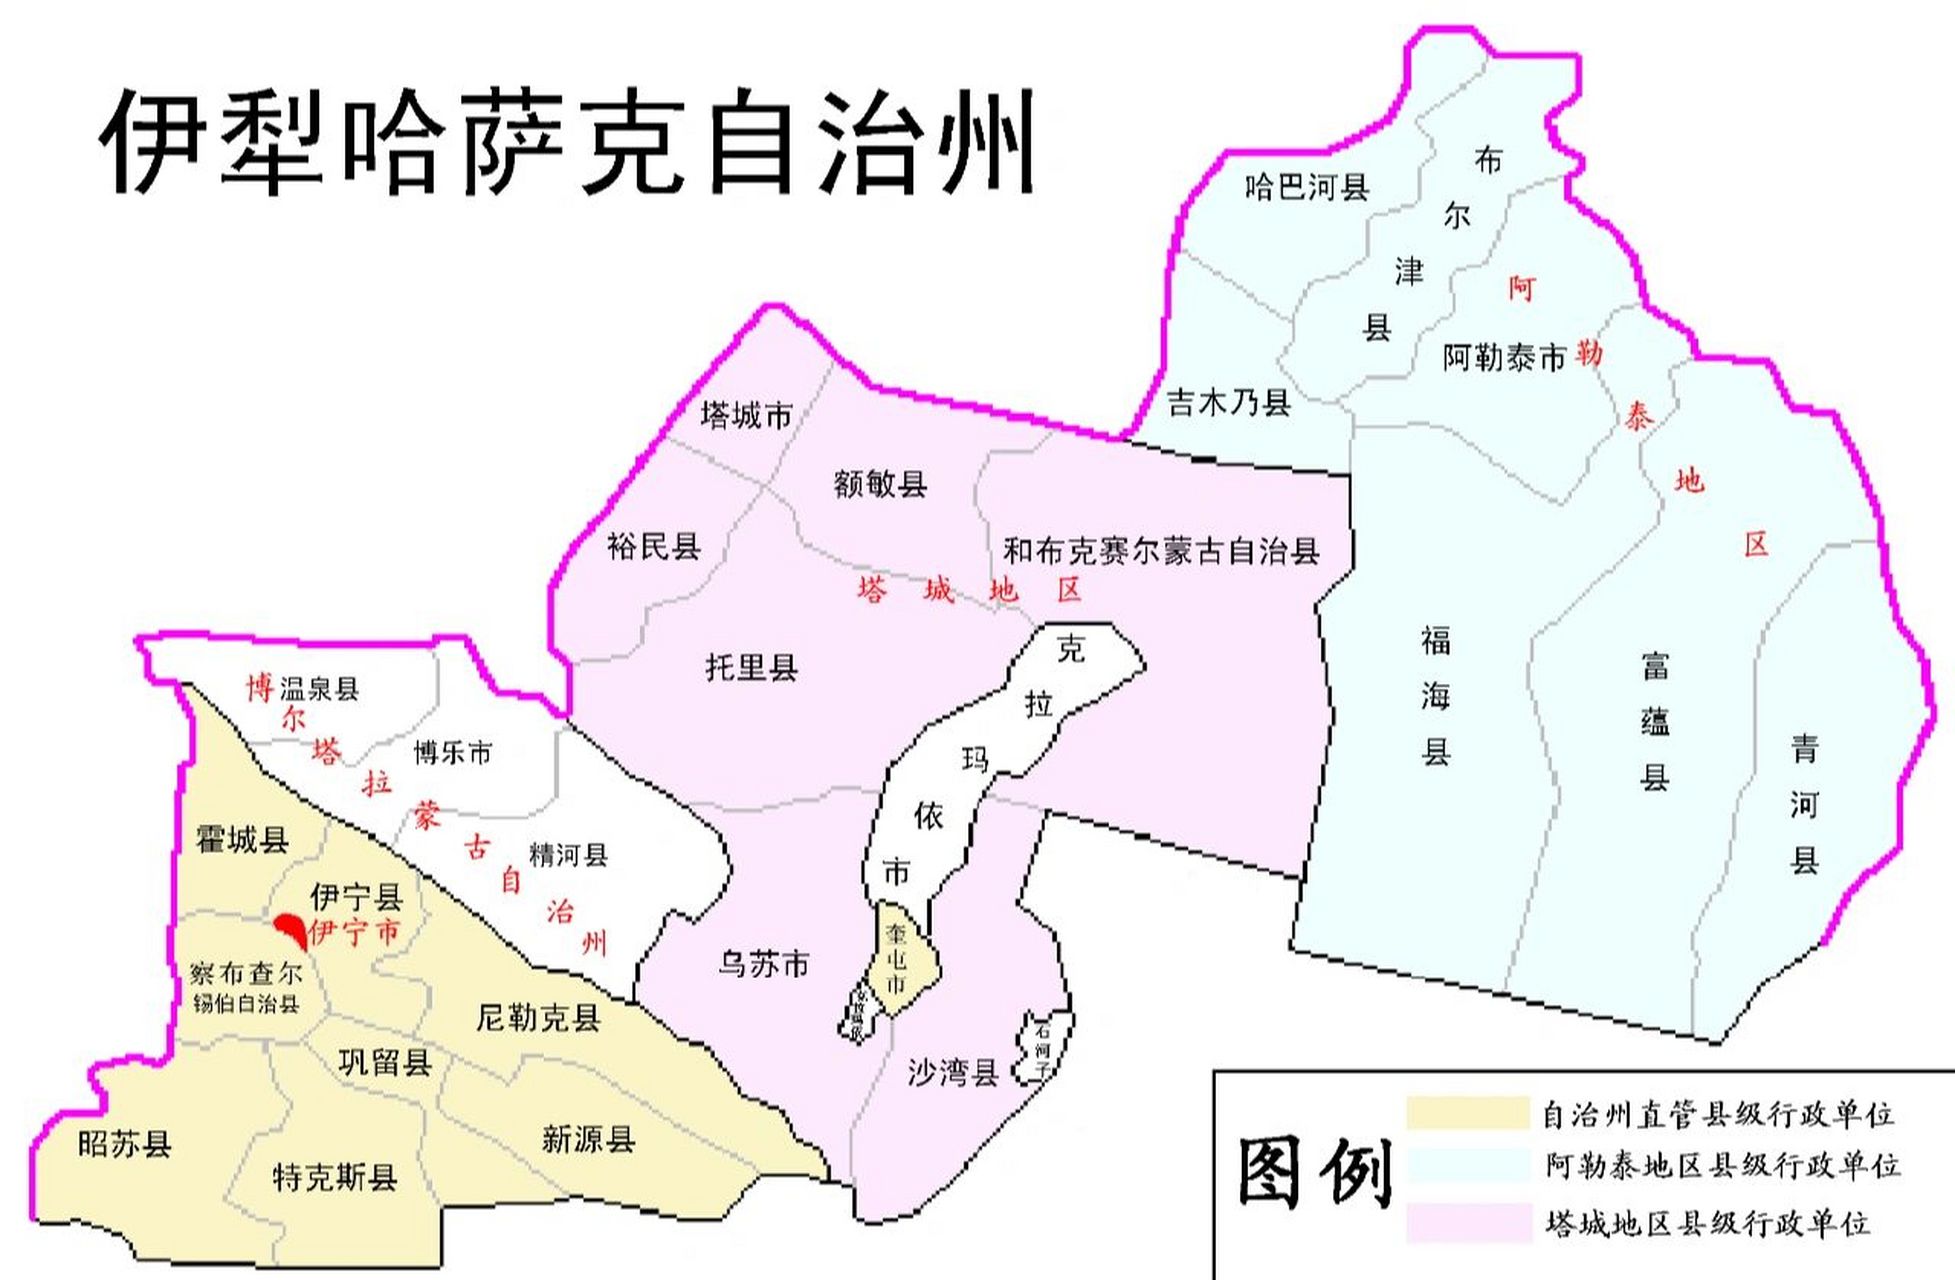 伊犁哈萨克自治州行政区划如下 伊犁哈萨克自治州行政区划如下:伊犁州